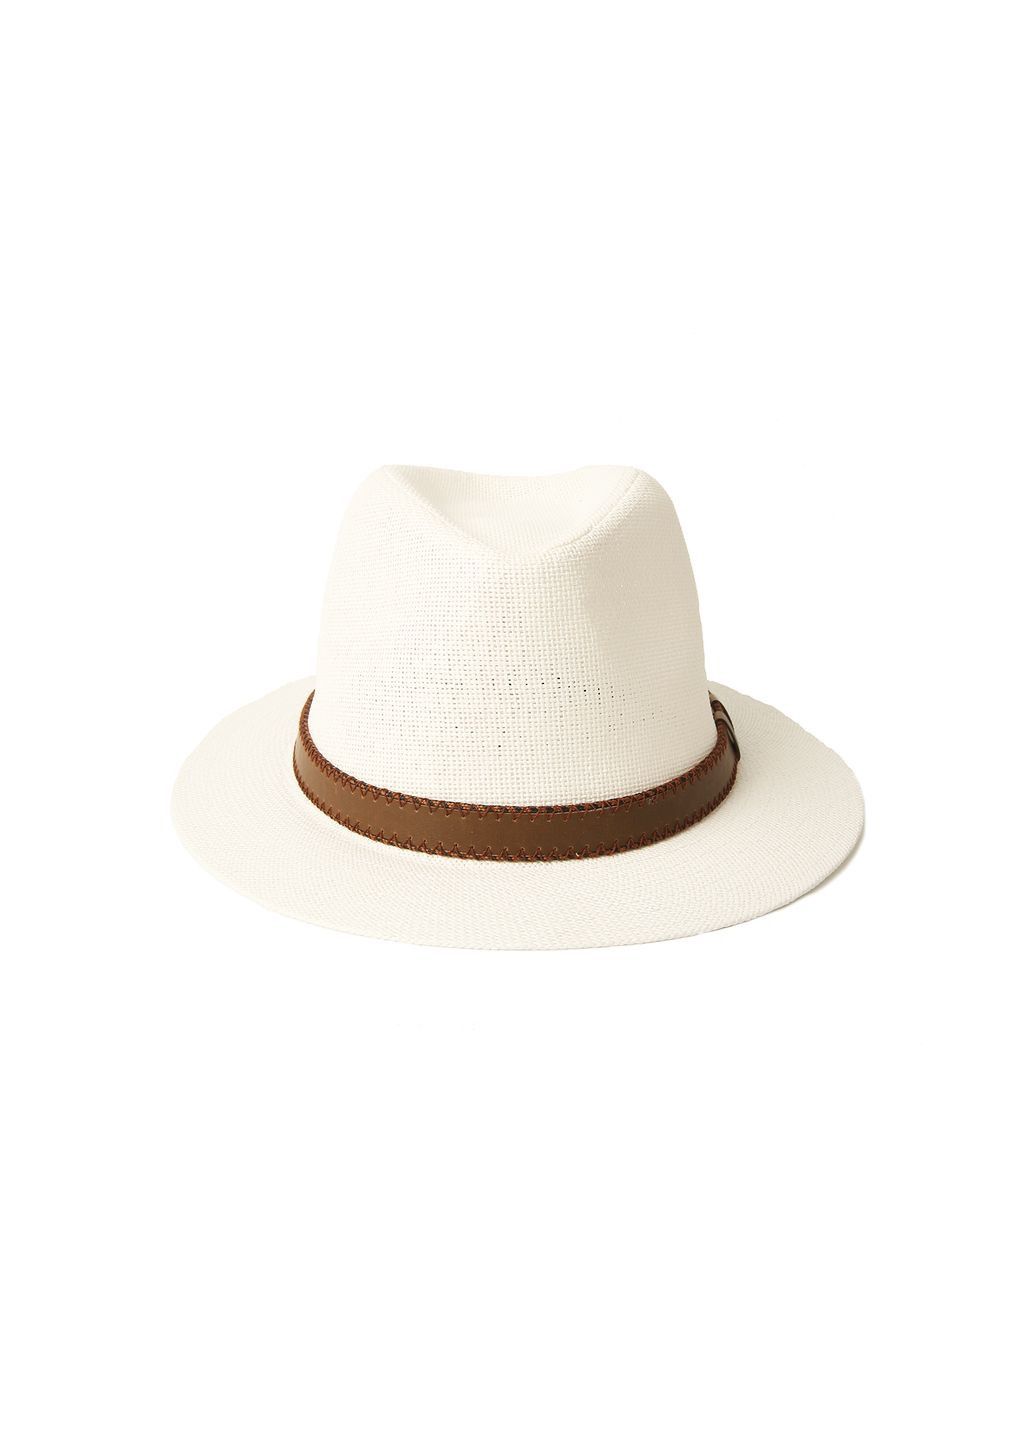 Шляпа федора мужская бумага белая BATTY 817-686 LuckyLOOK 817-686м (289478400)